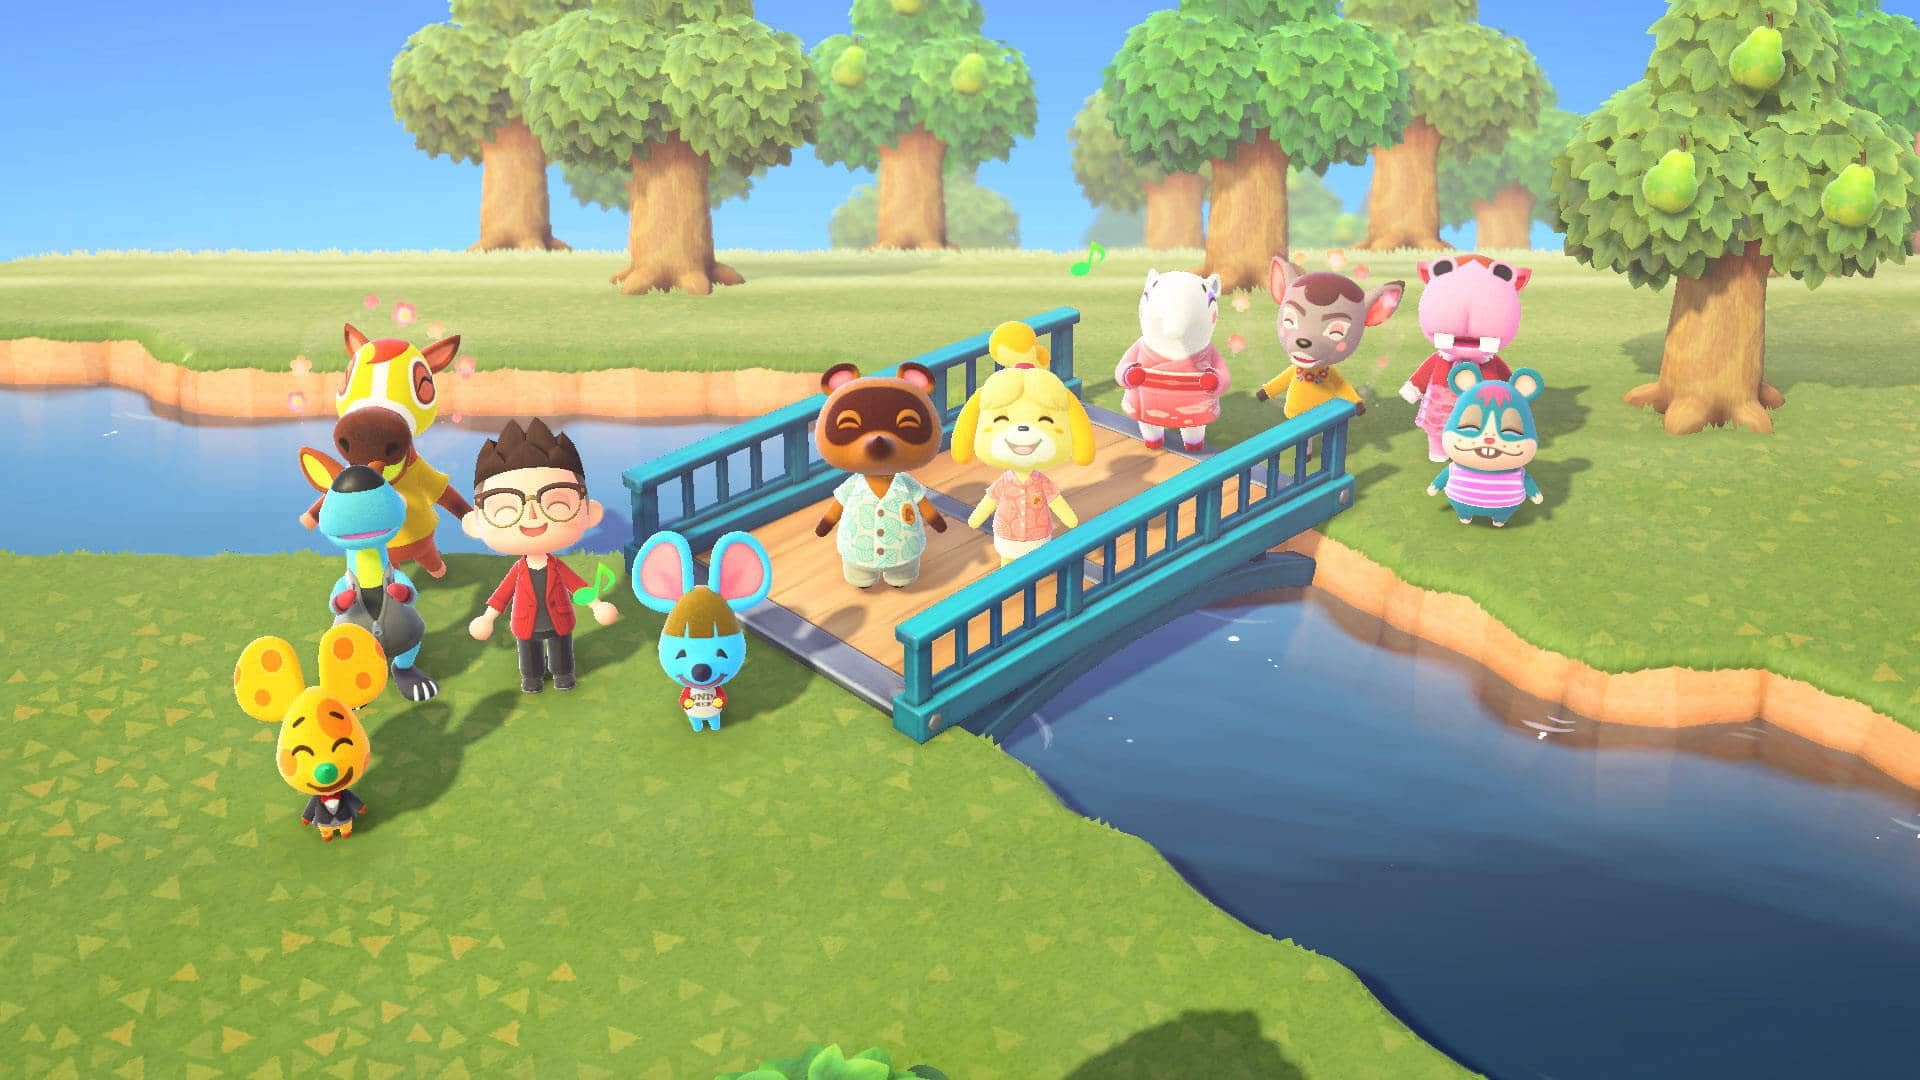 Immagine di Animal Crossing: New Horizons incontra Breaking Bad, un fan ricrea Walter White e il suo laboratorio